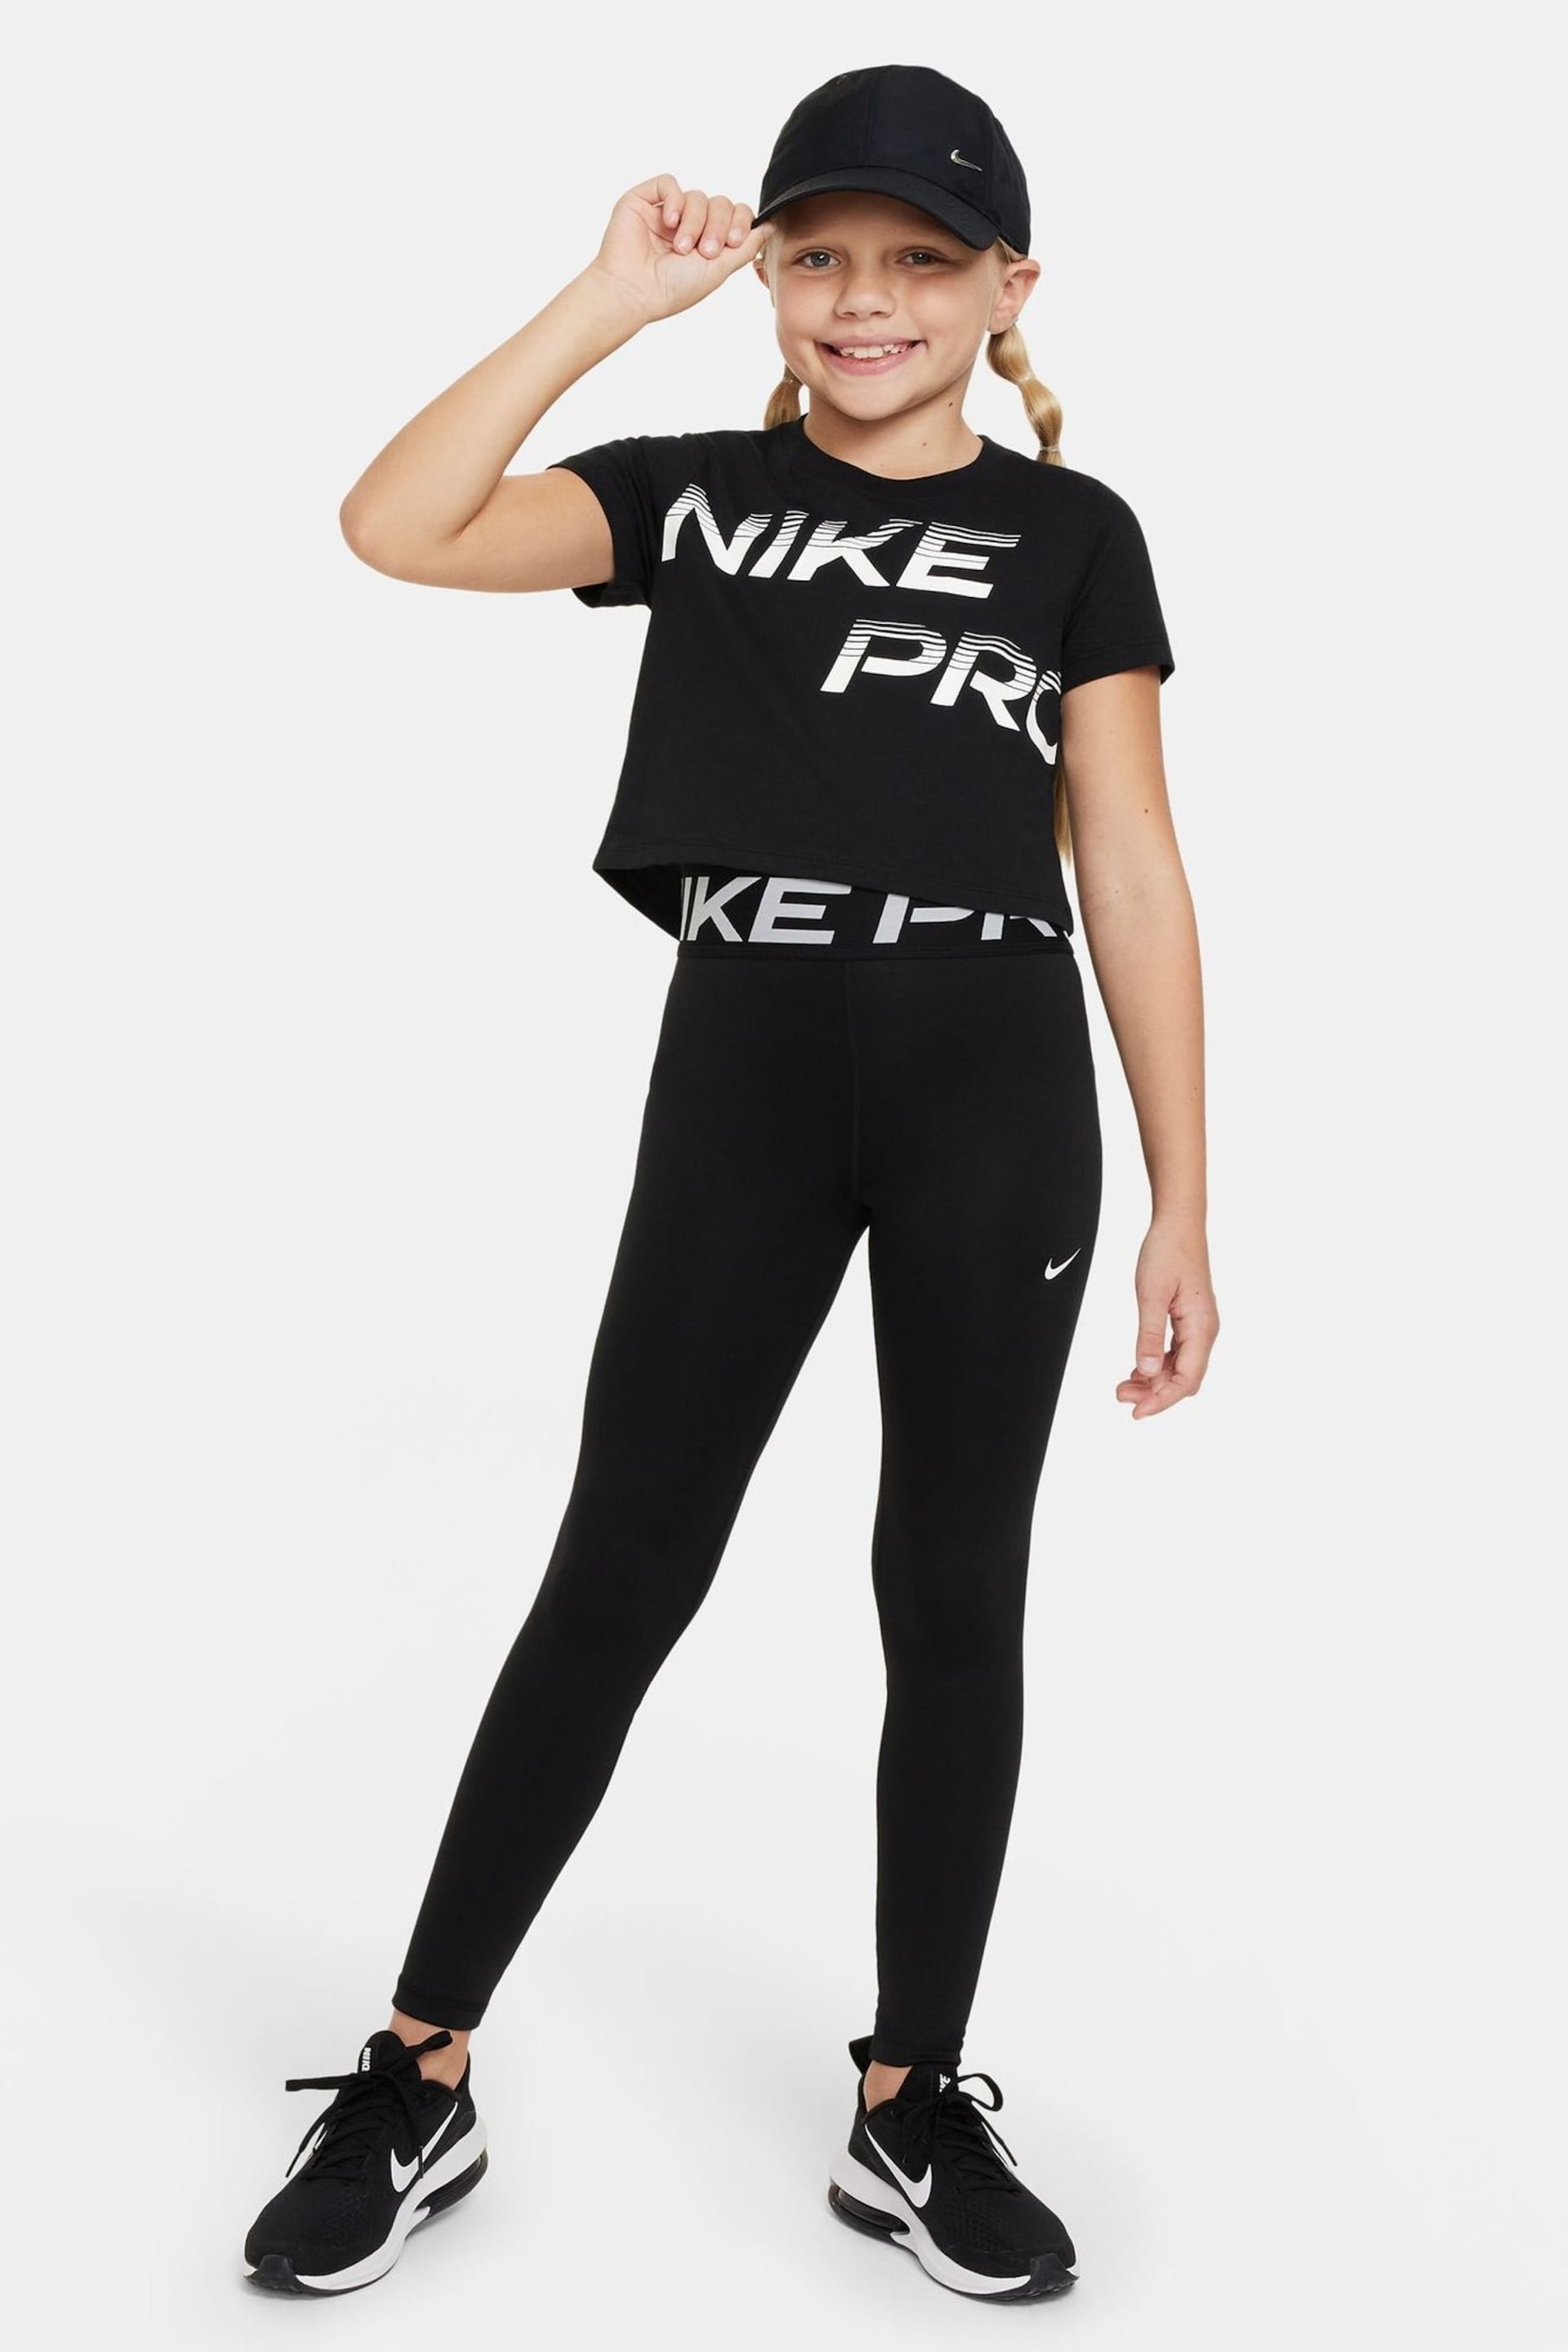 Nike Black Pro Cropped T-Shirt - Image 3 of 4